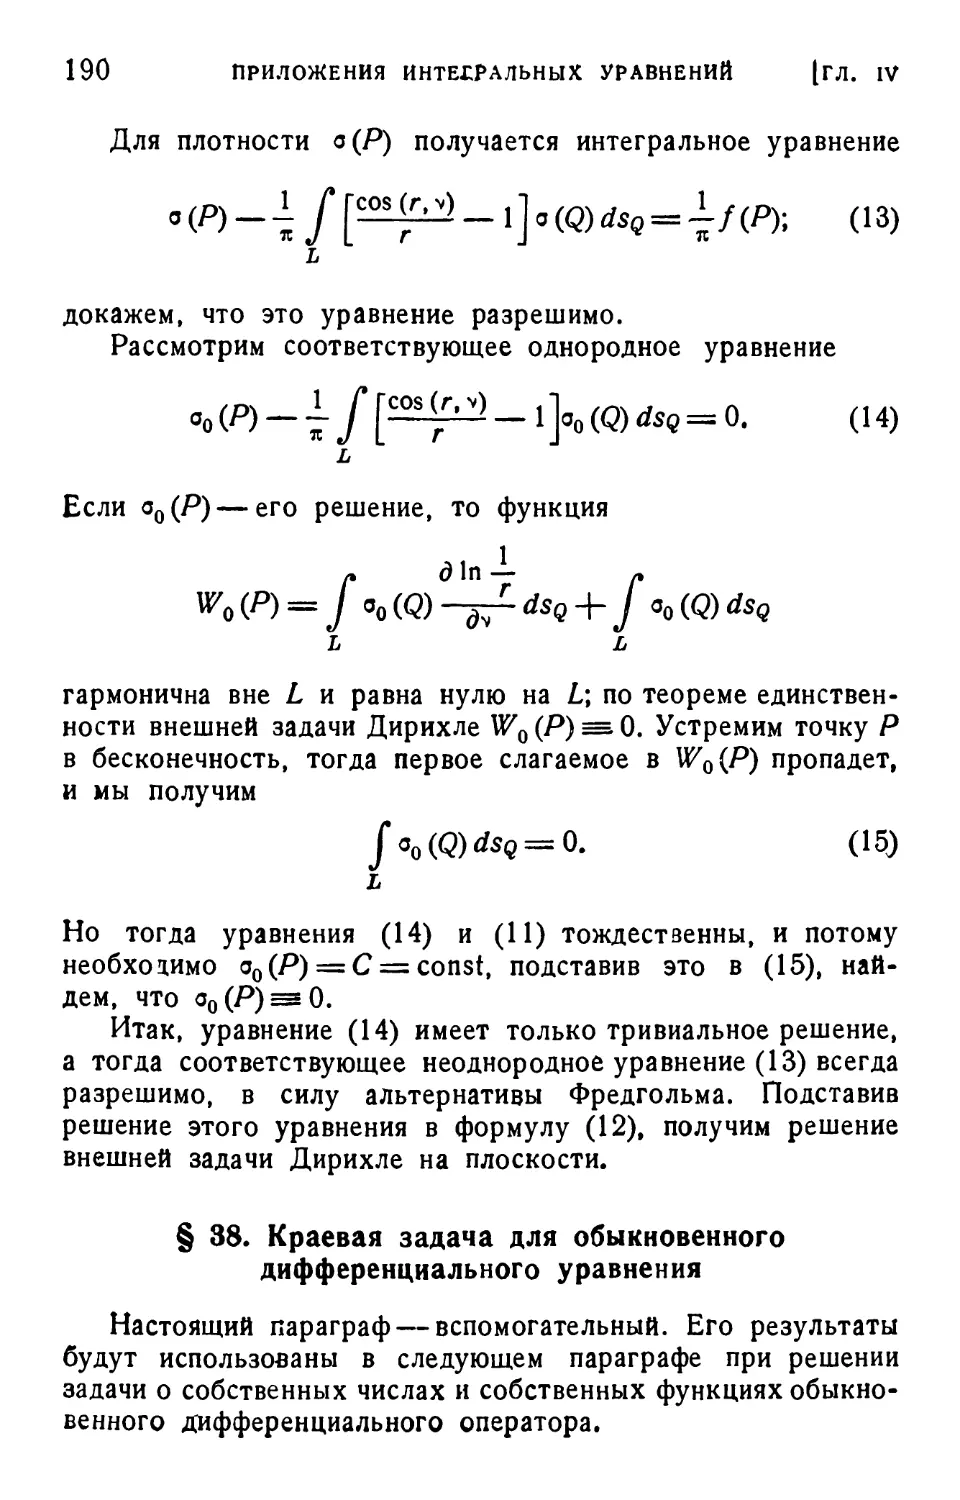 § 38. Краевая задача для обыкновенного дифференциального уравнения